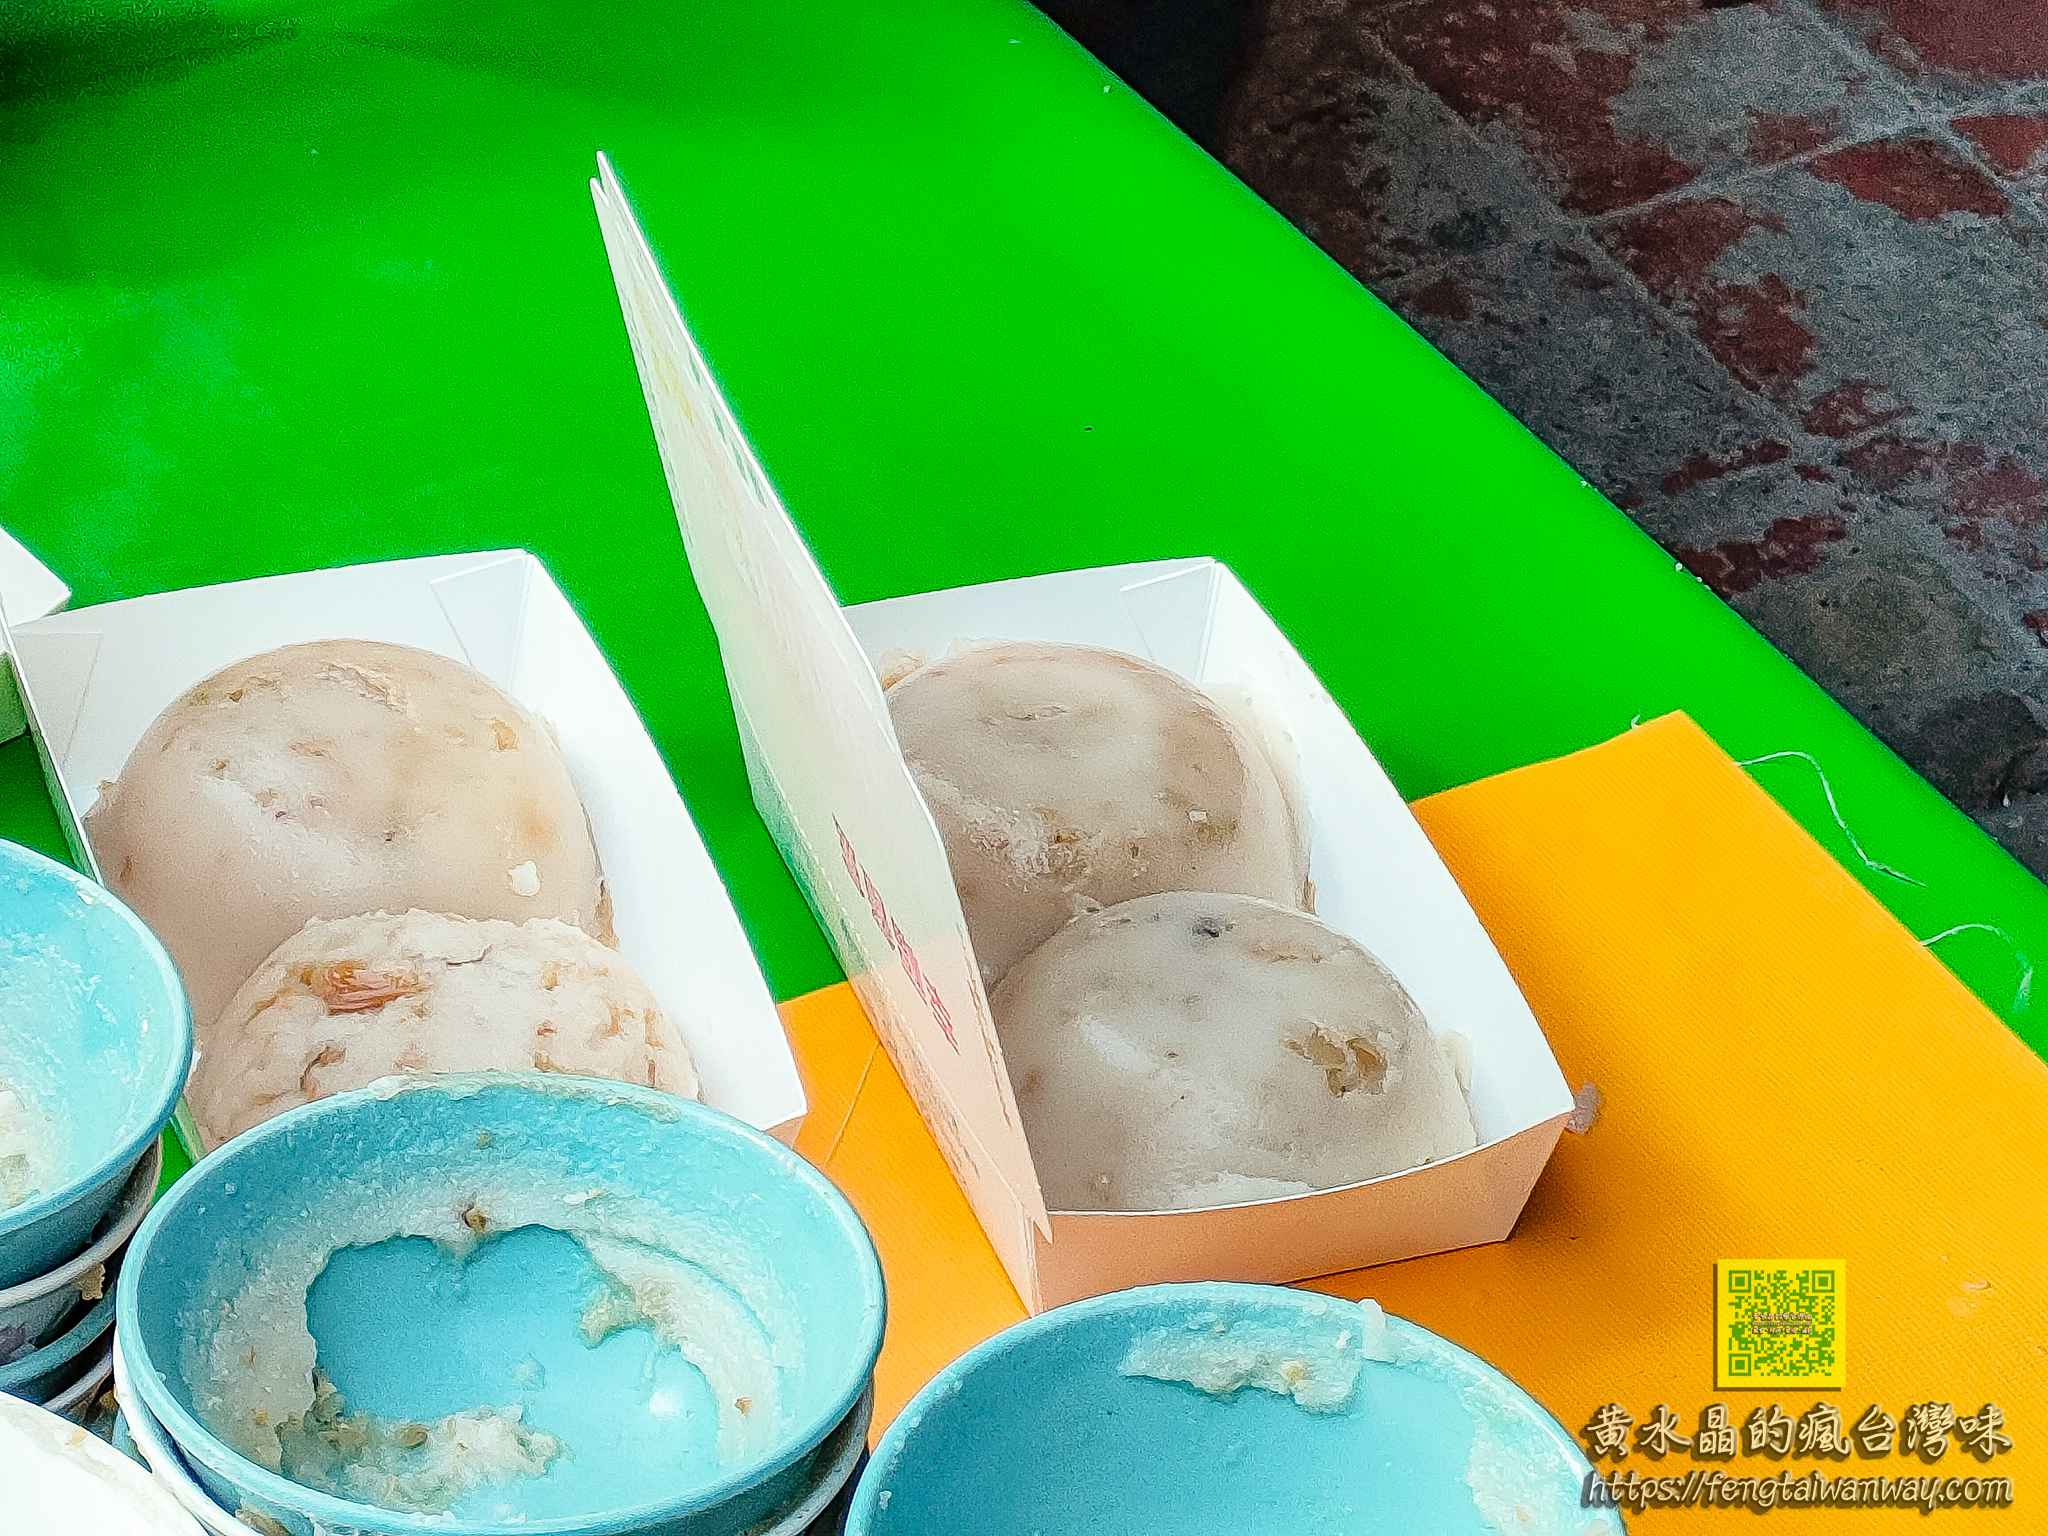 金華市場麻豆碗粿【台南美食】｜碗粿2個50元的高人氣市場美食